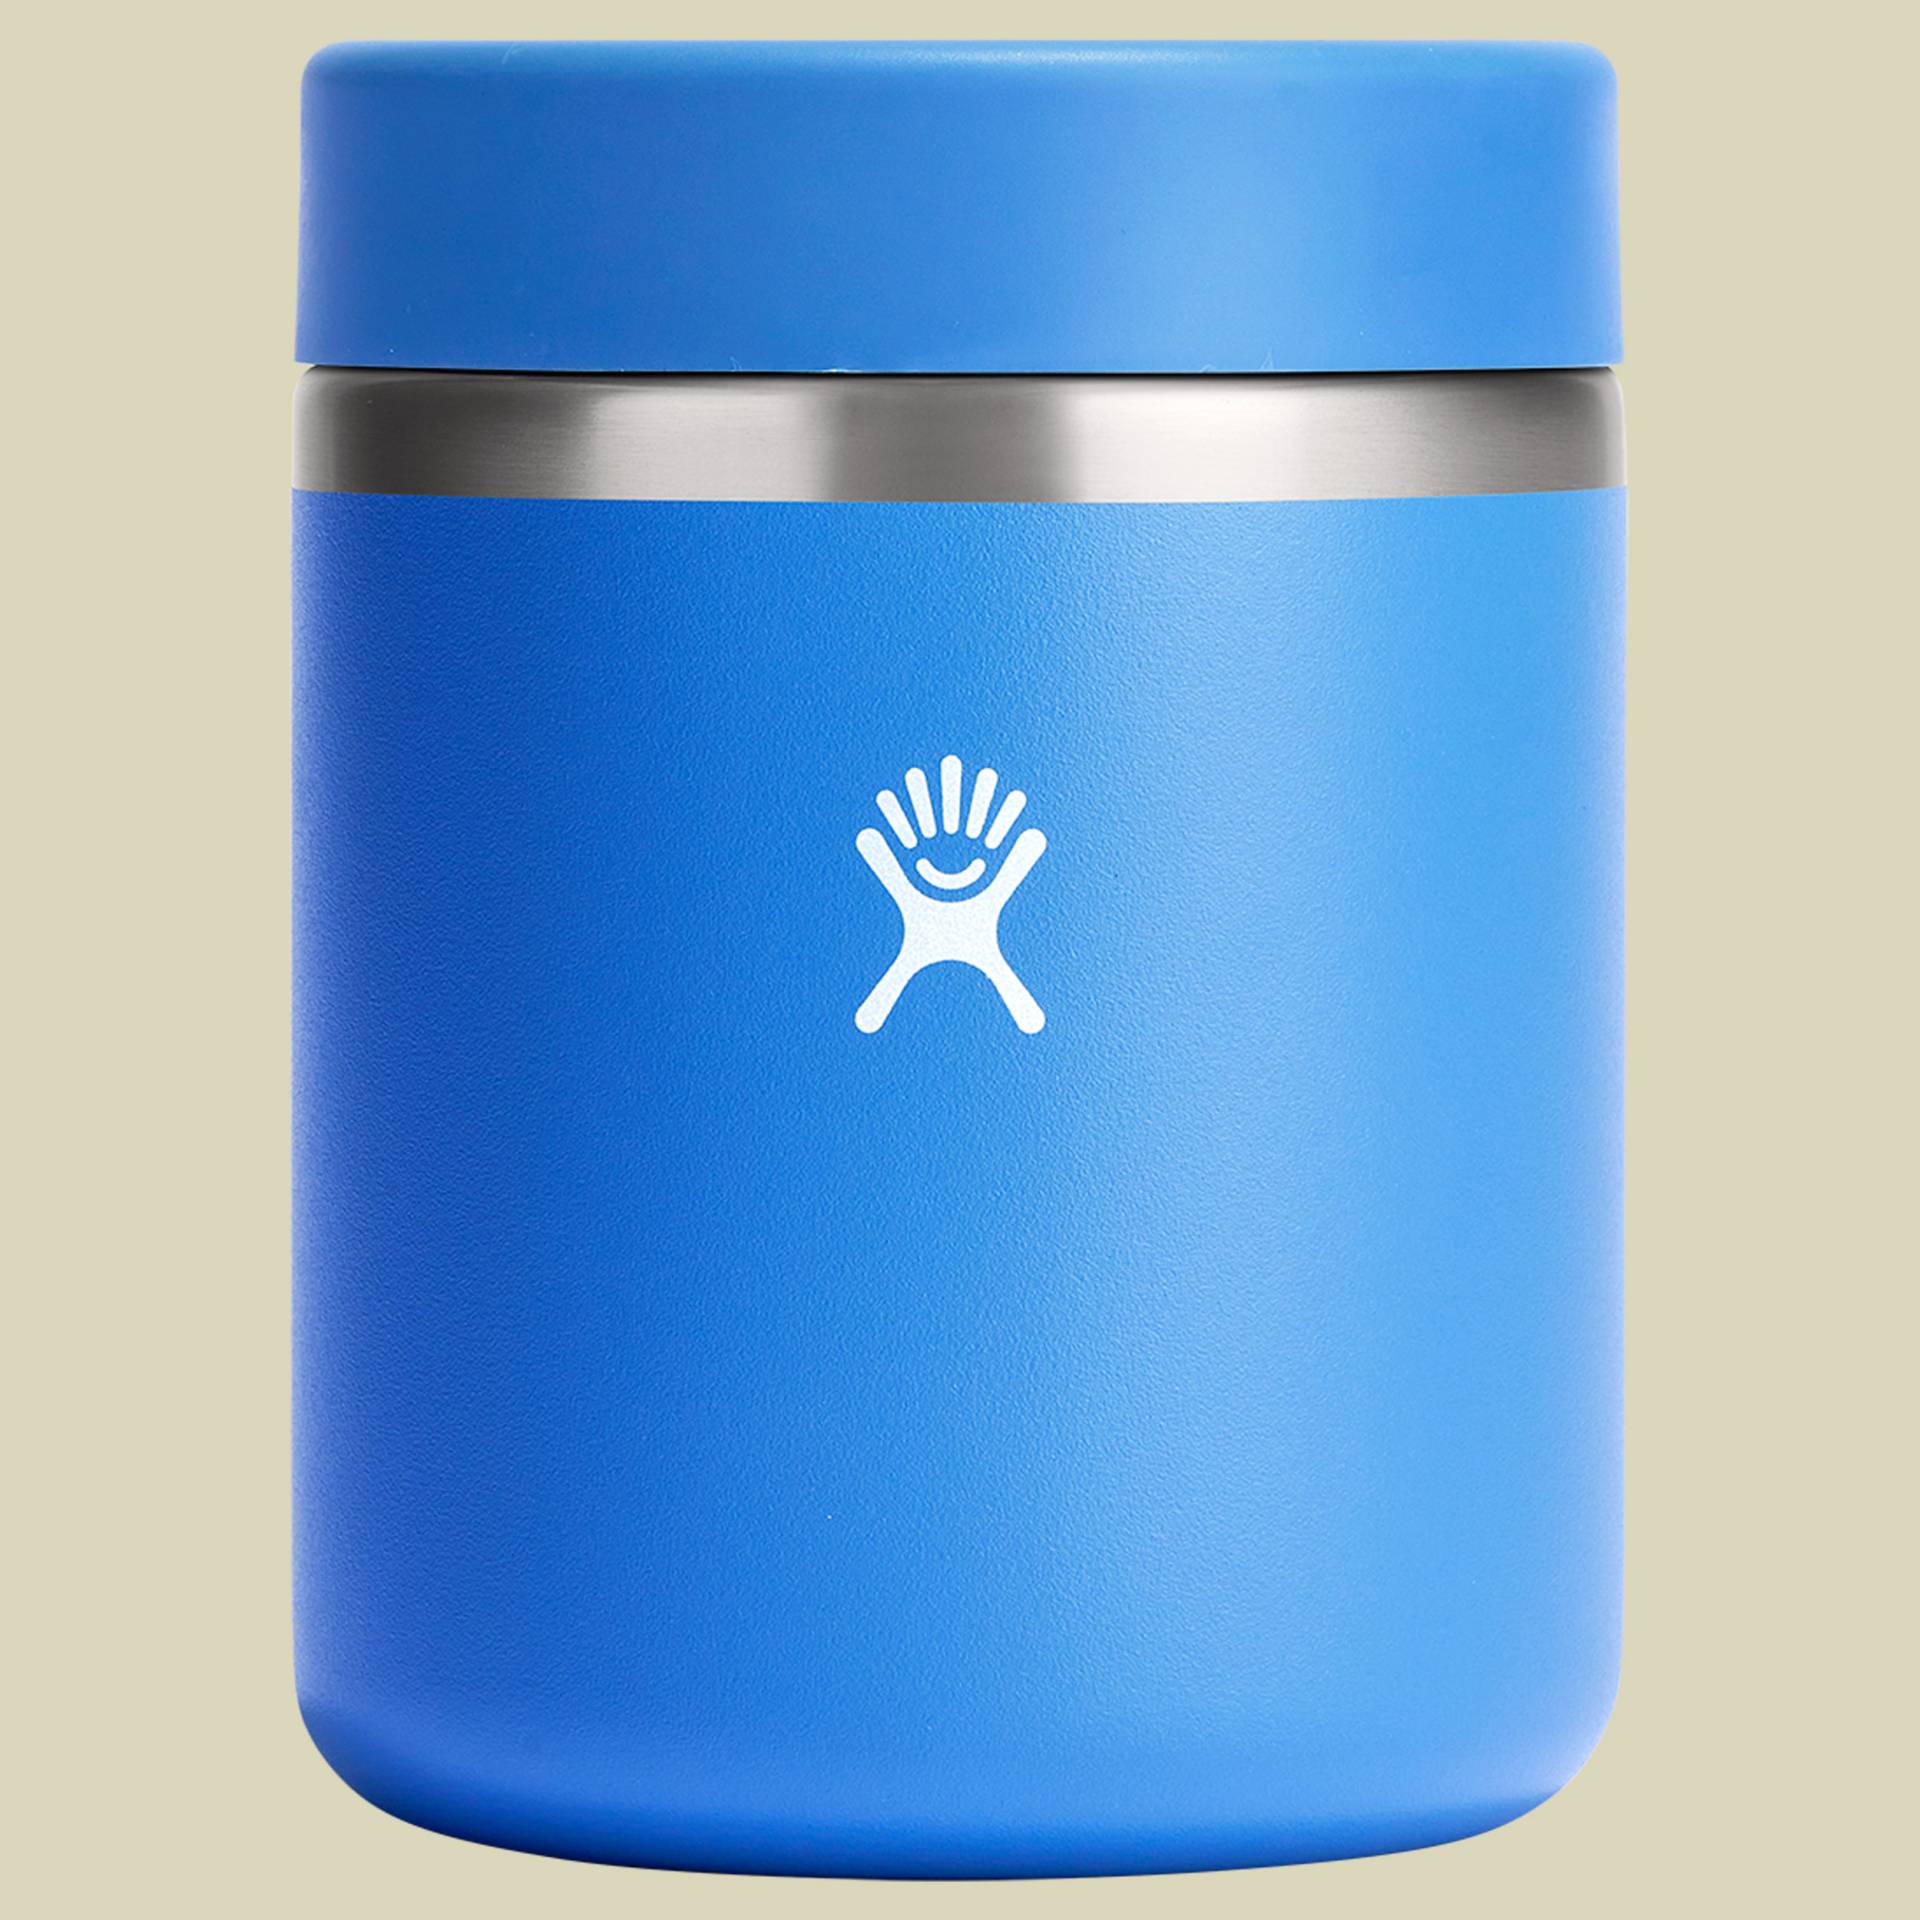 28 oz Insulated Food Jar blau 828 - Farbe blau von Hydro Flask